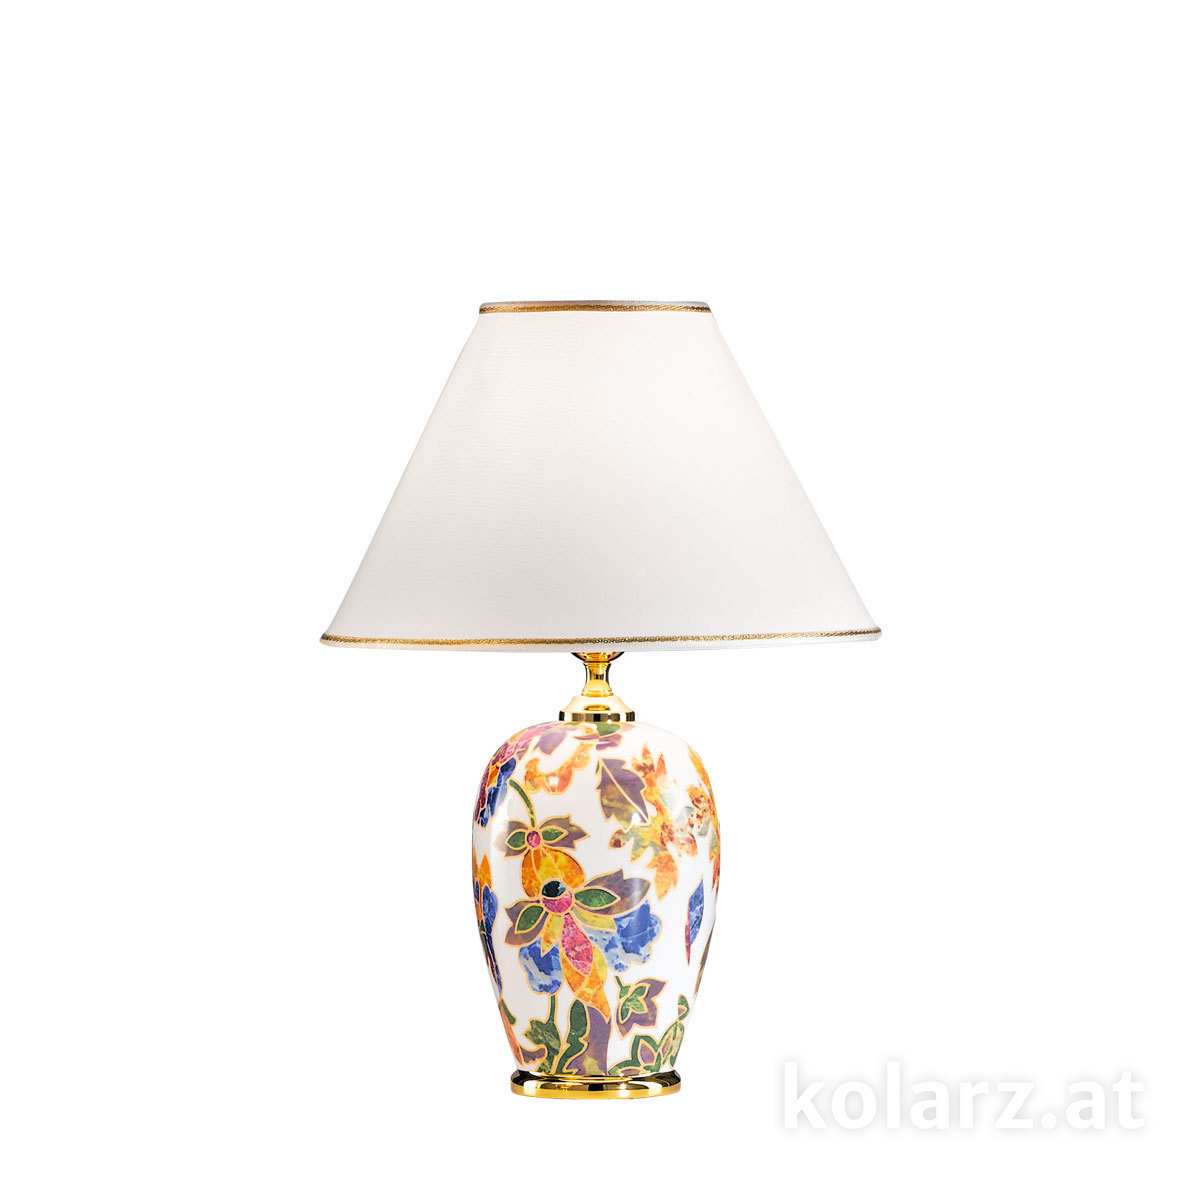 KOLARZ Leuchten - 0094.70 - Austrolux Tischleuchte | table lamp Damasco - Lagerräumung -